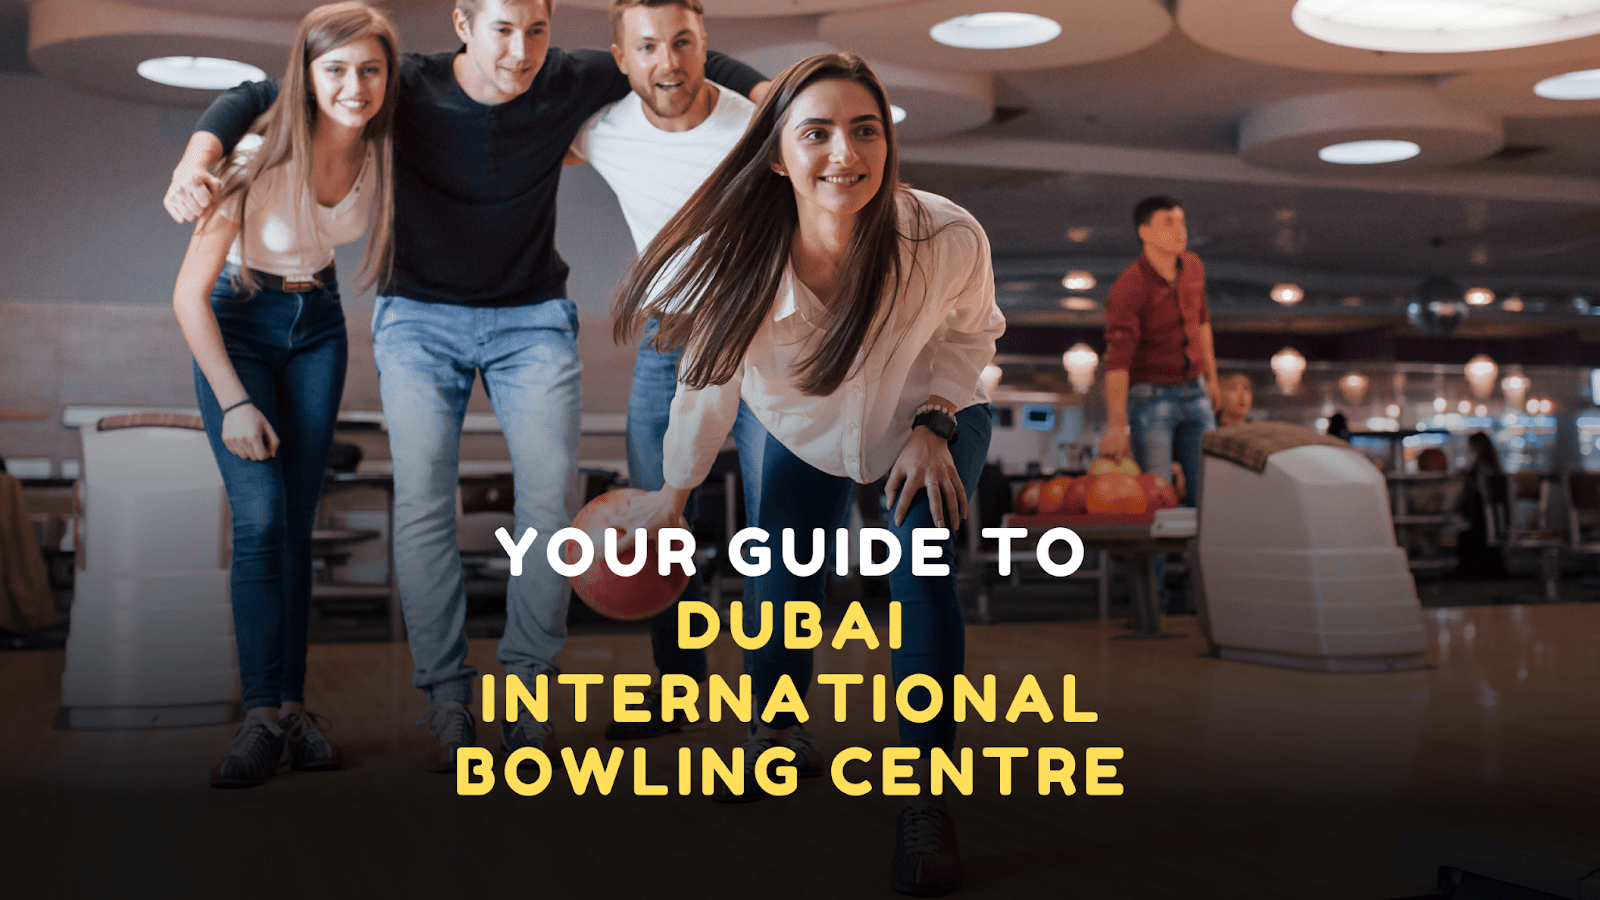 Dubai International Bowling Centre